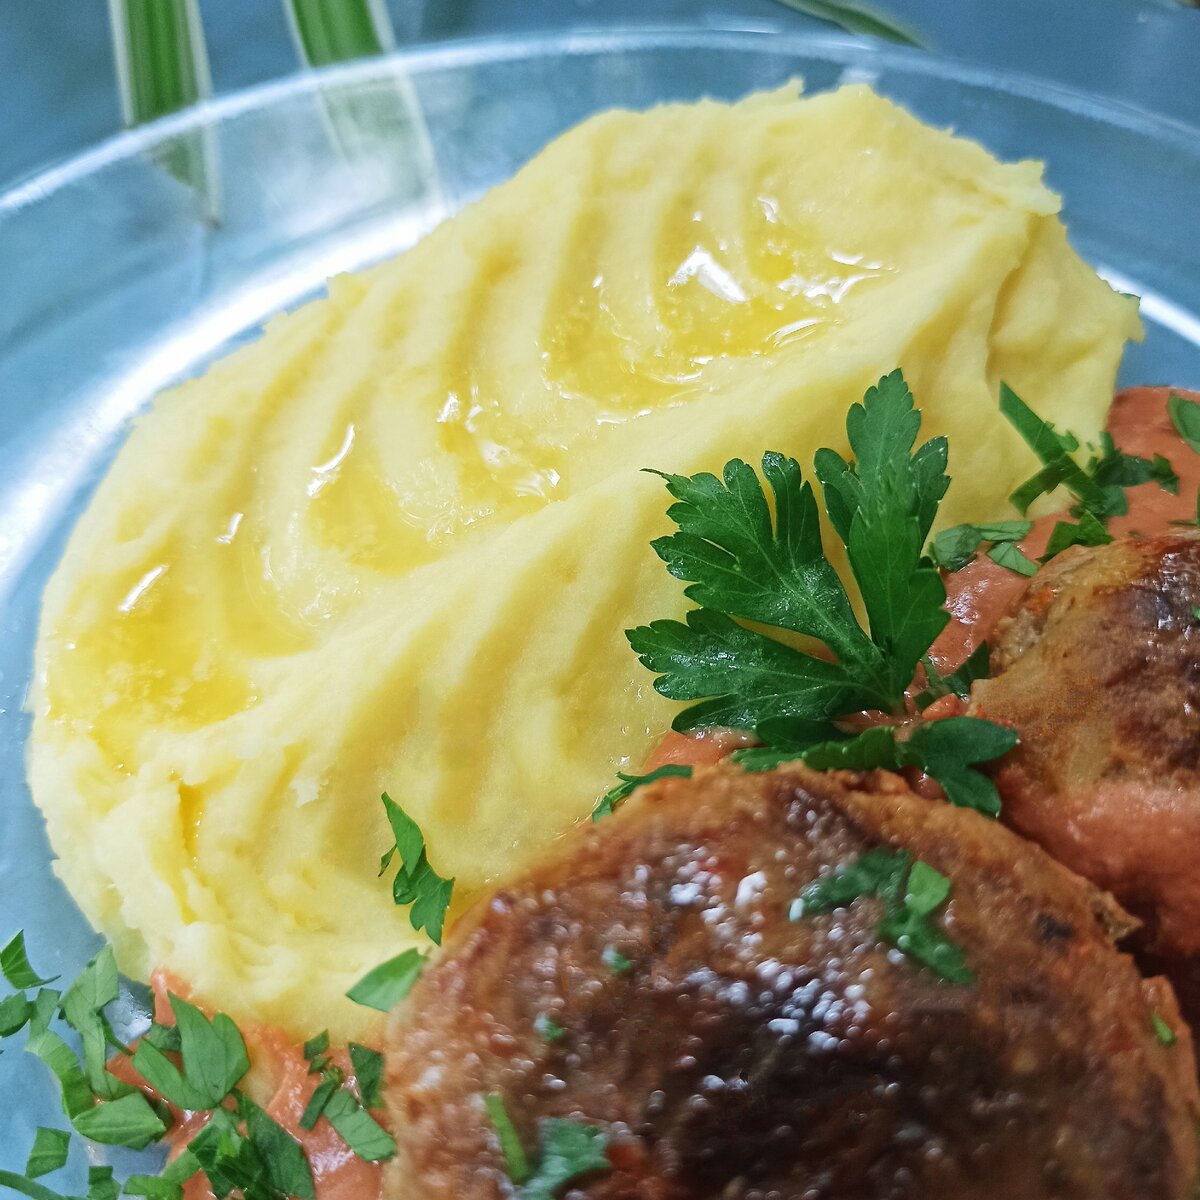 Картофельные котлеты "дьяковские" – кулинарный рецепт